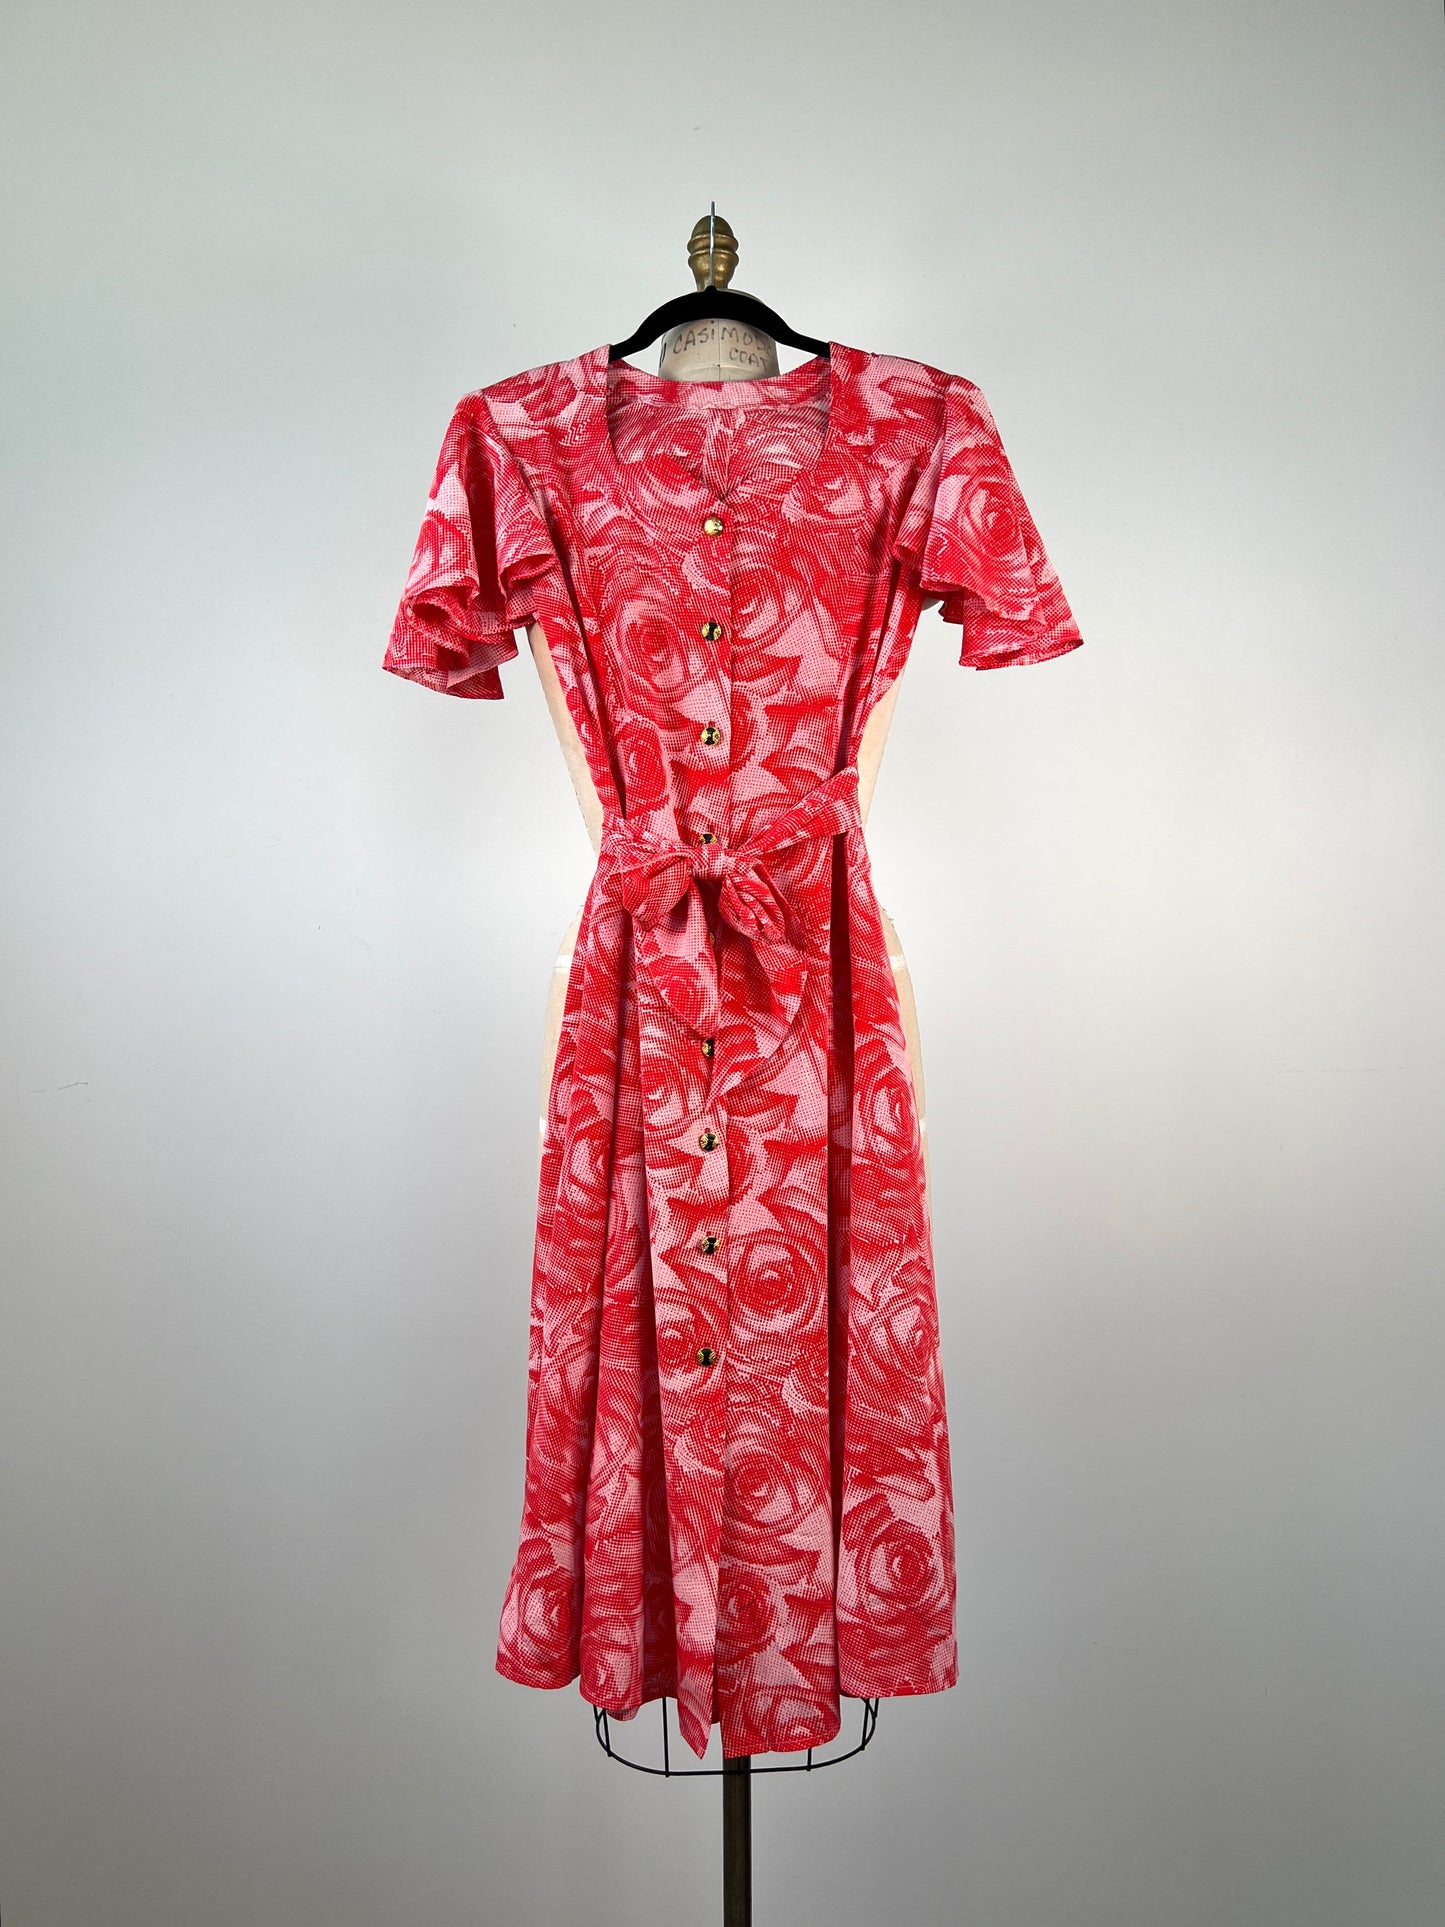 Robe vintage flamenco à pois de roses rouges (XXS)